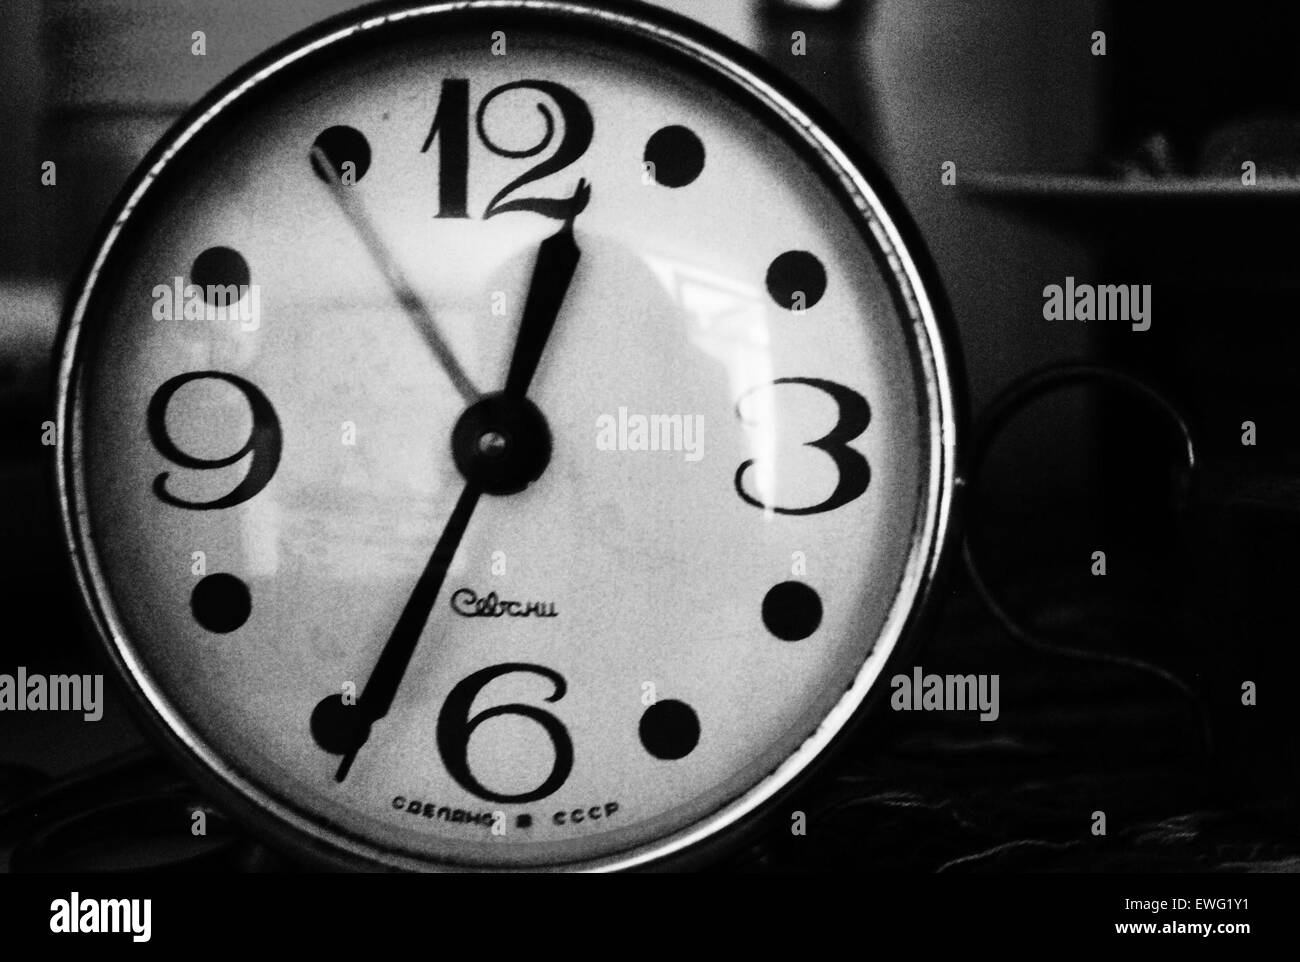 Black und White Vintage Wecker Alarm Clock Uhr Gesicht Zahlen Uhrzeit schwarz-weiß Monochrom Vintage Uhr Stockfoto